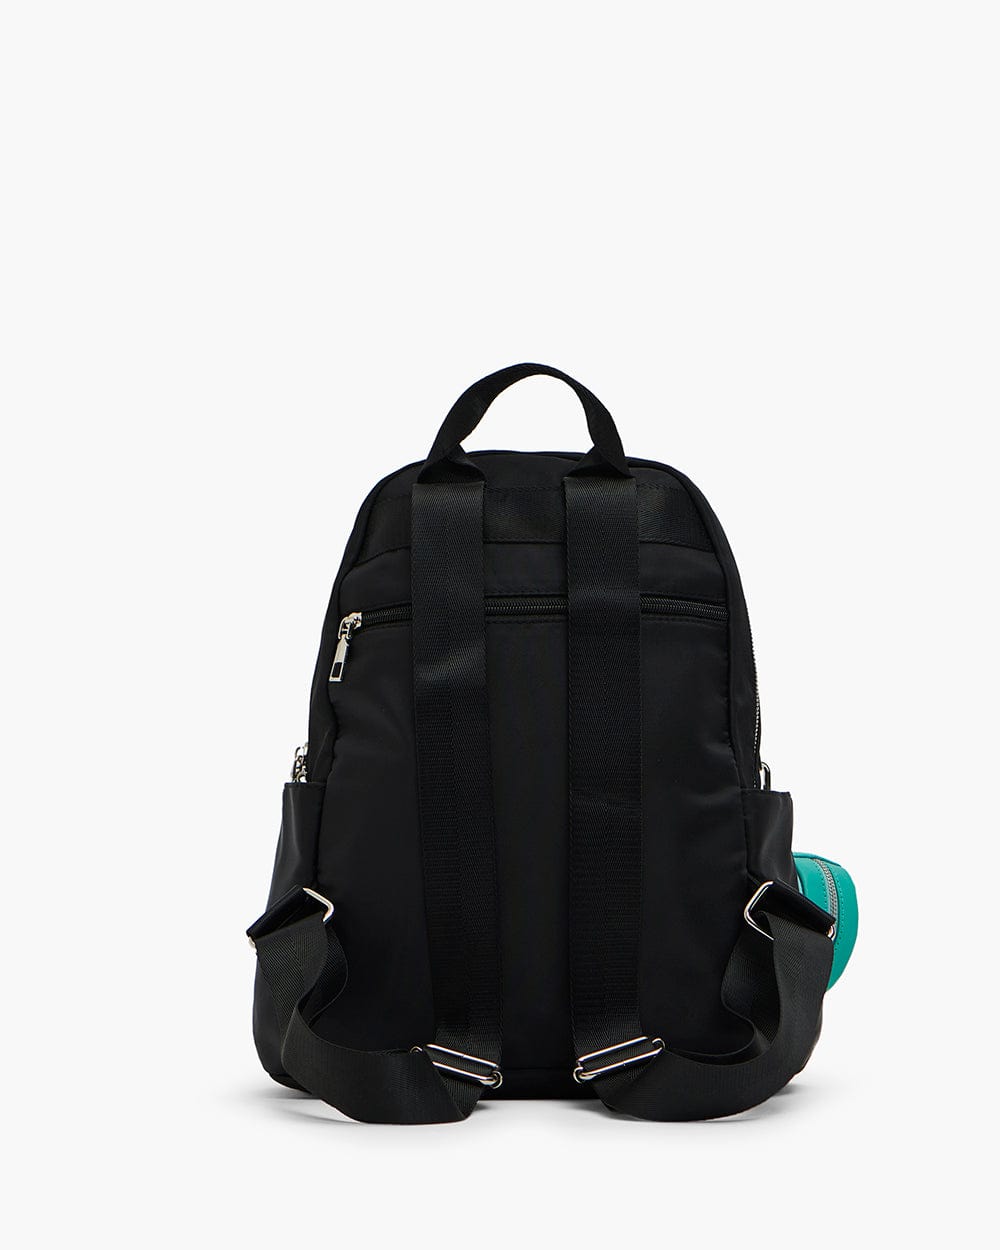 Chumbak Daily Hustle Backpack - Black